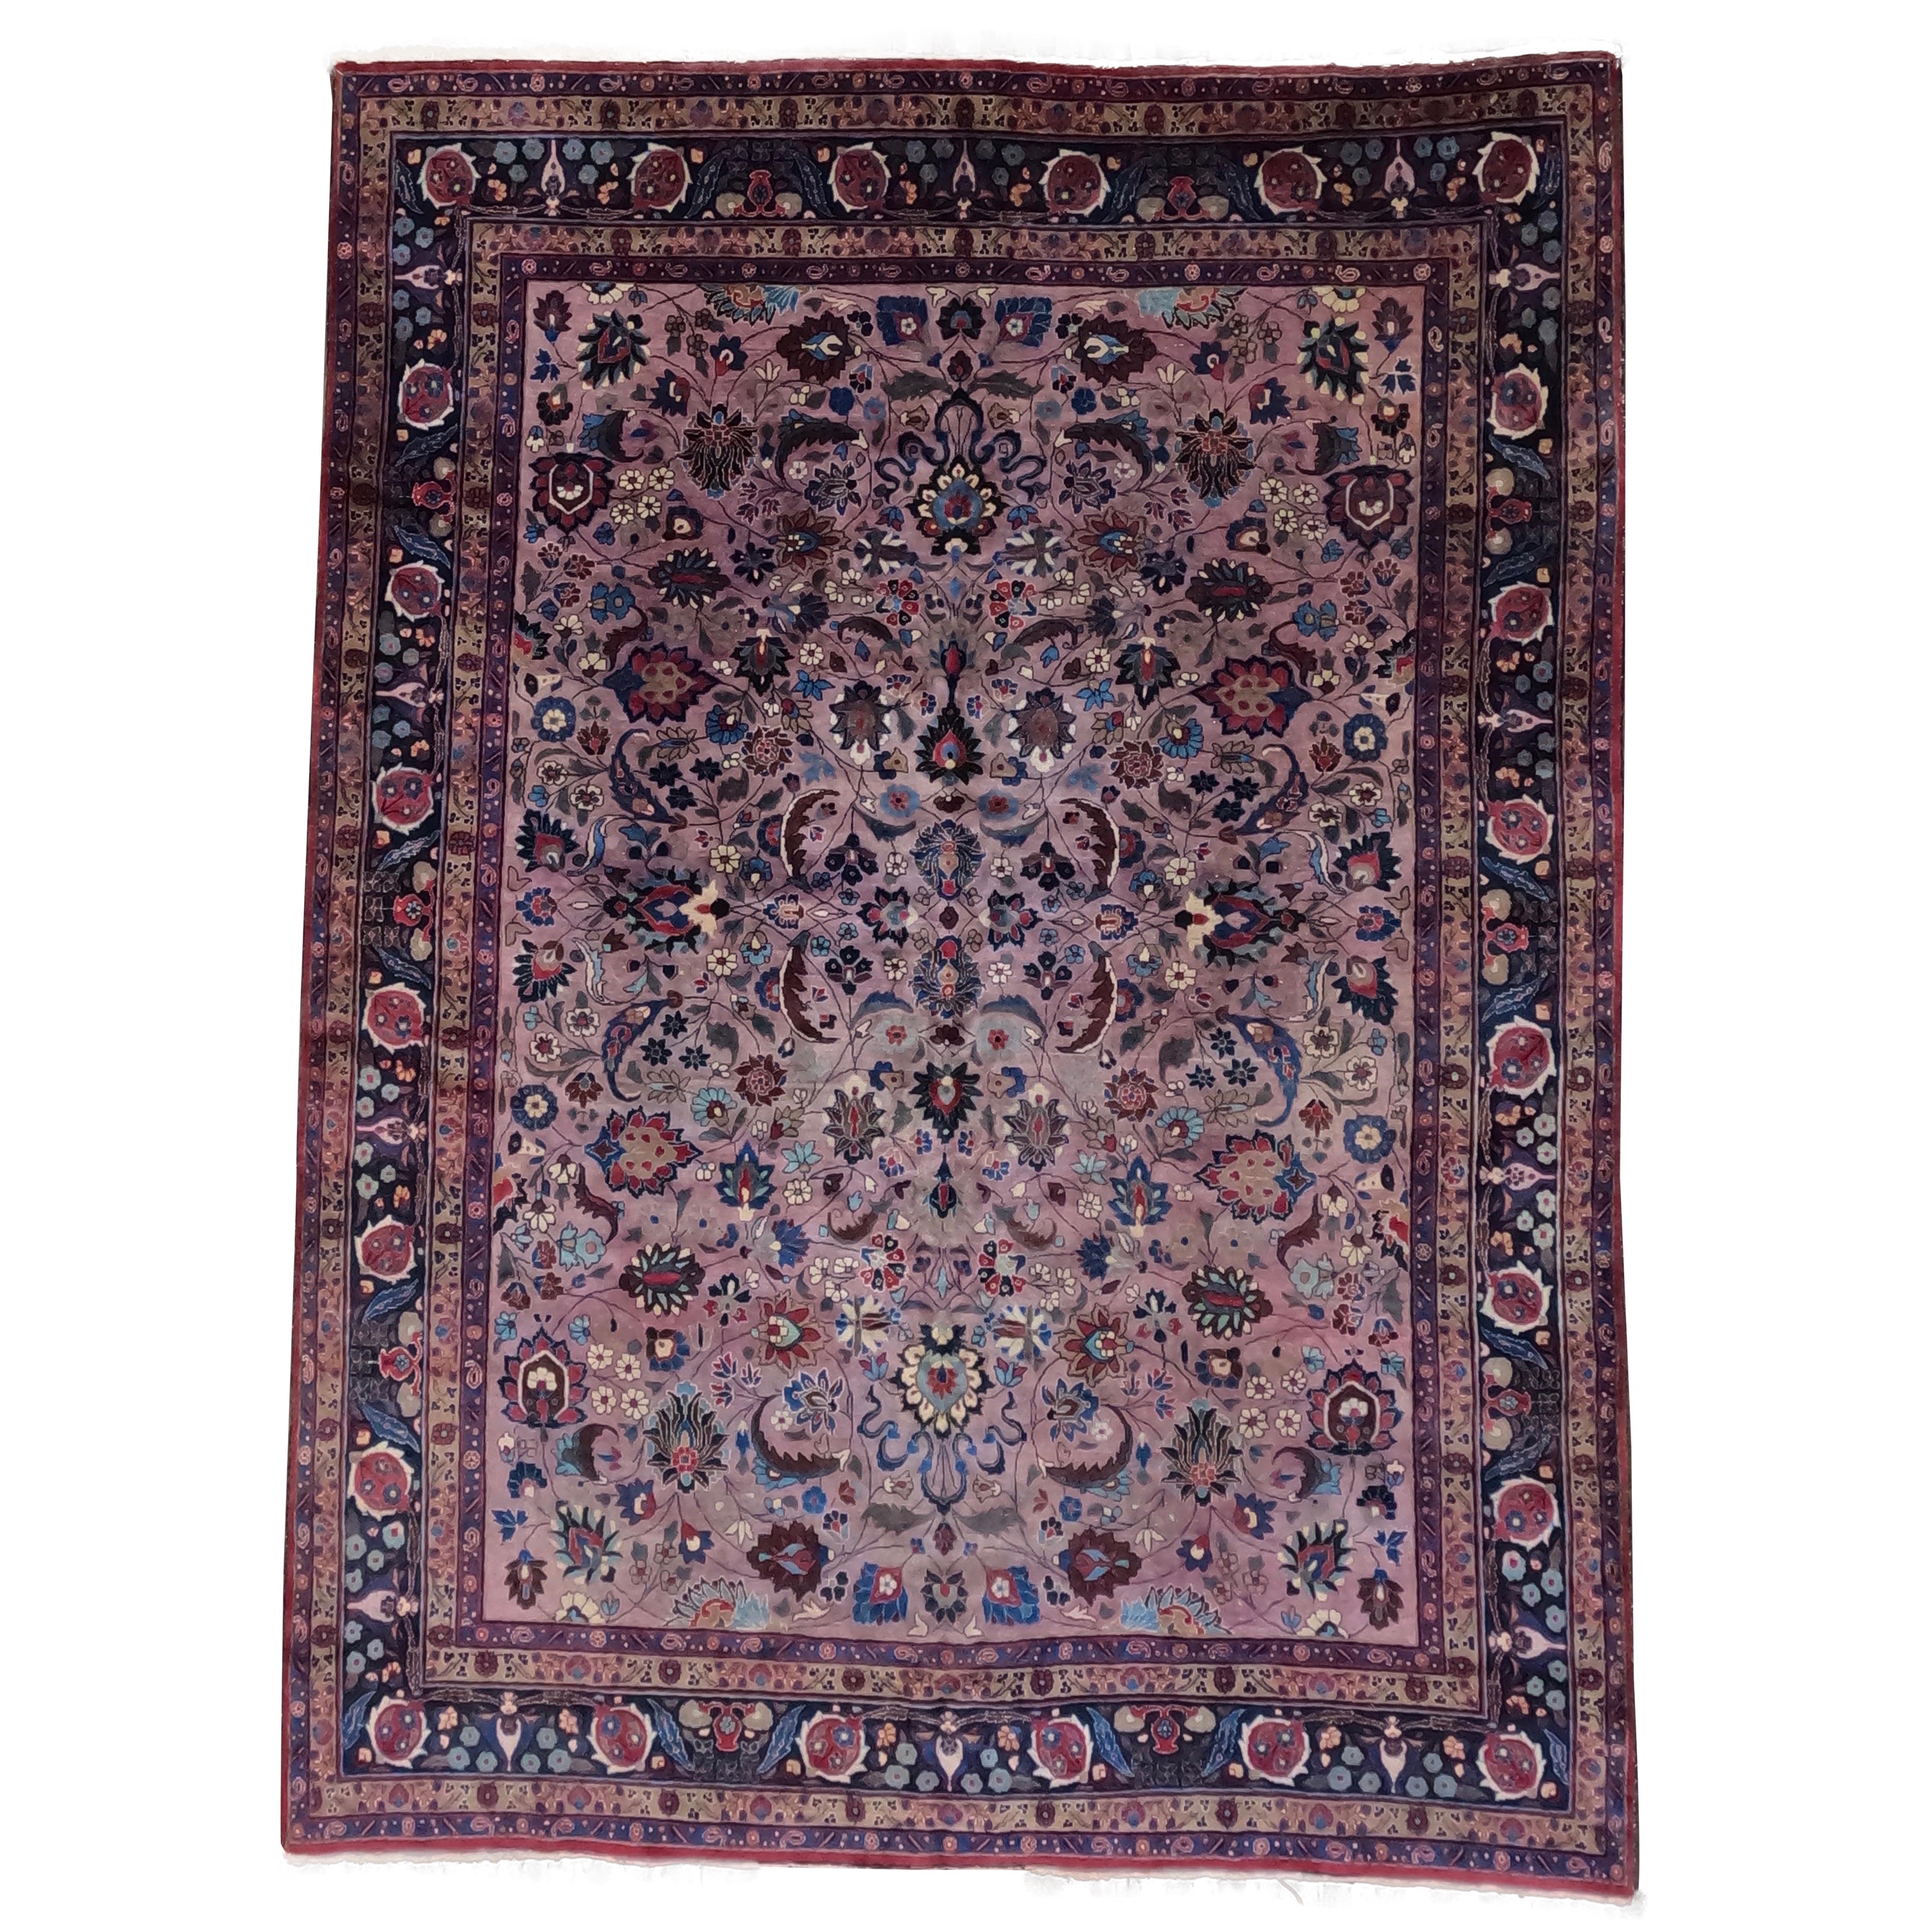 Antique Persian Khorasan Carpet, circa 1930